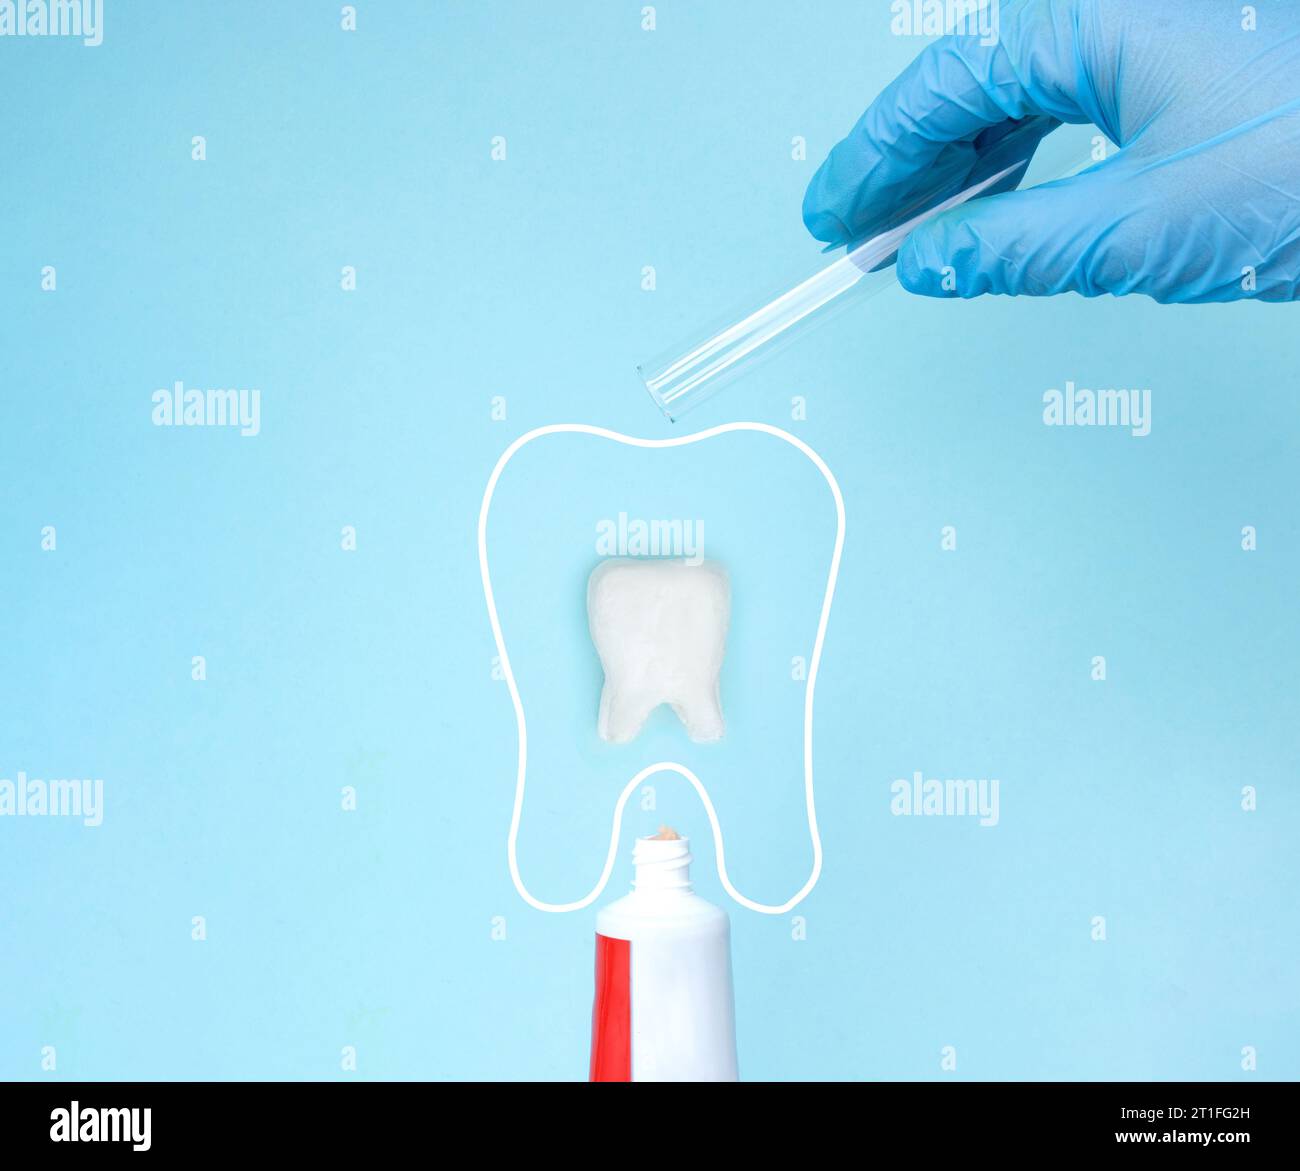 Les mains des médecins dans des gants bleus tiennent le tube de verre avec du calcium sous le tube de dentifrice et la molaire modèle de dent. Outils d'équipement dentaire sain pour les soins dentaires. Banque D'Images